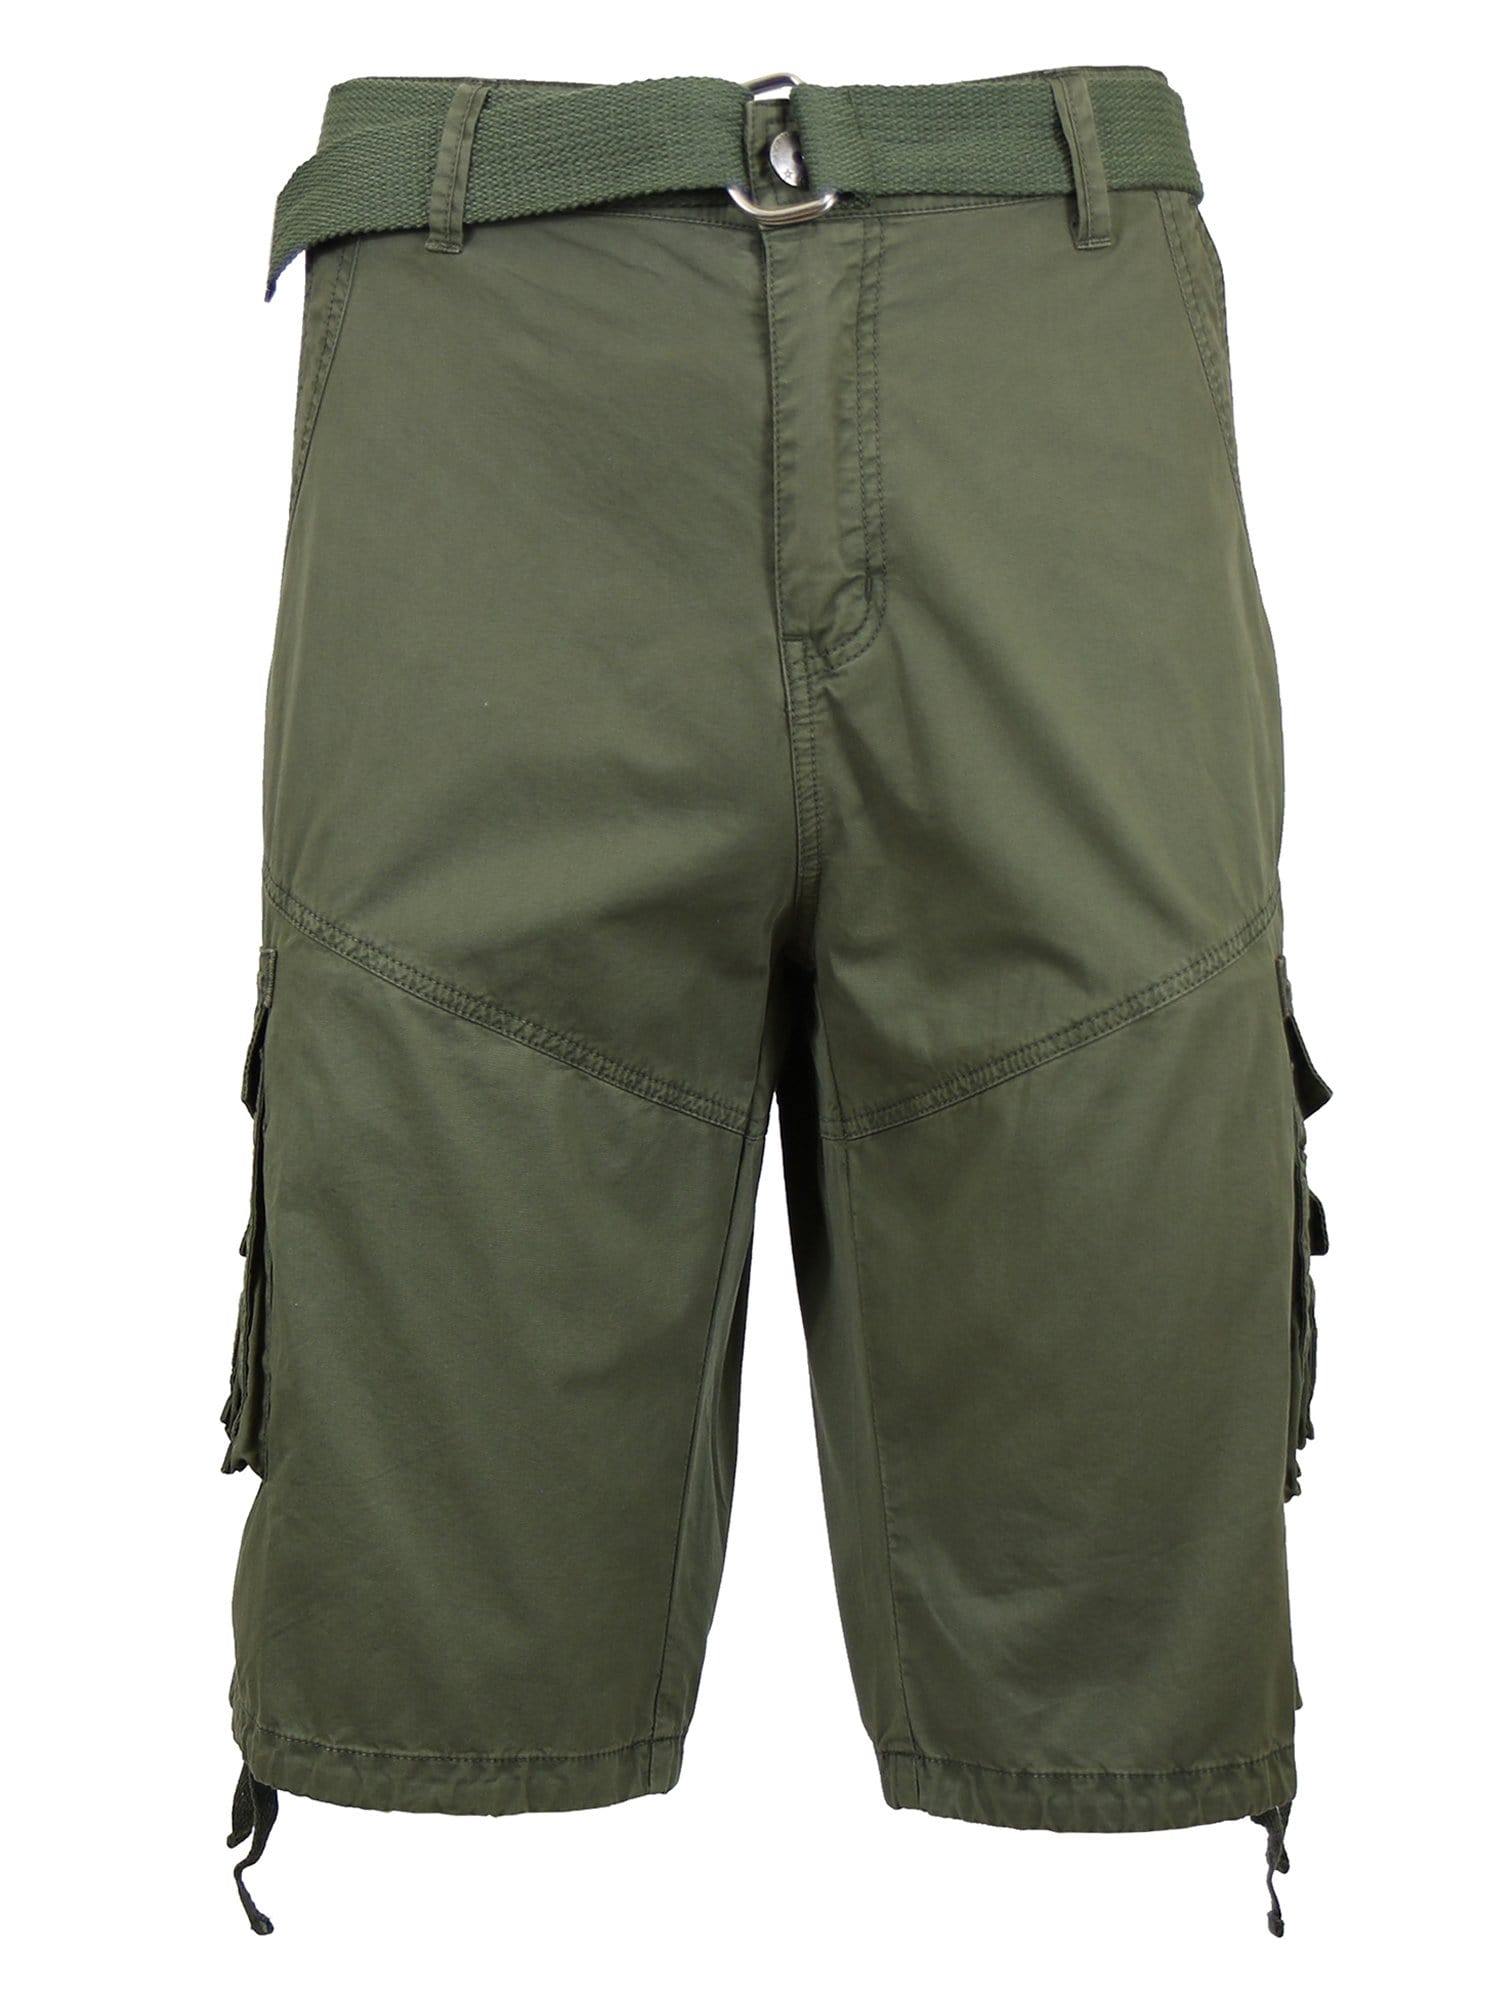 Men's Distressed Vintage Belted Cargo Shorts